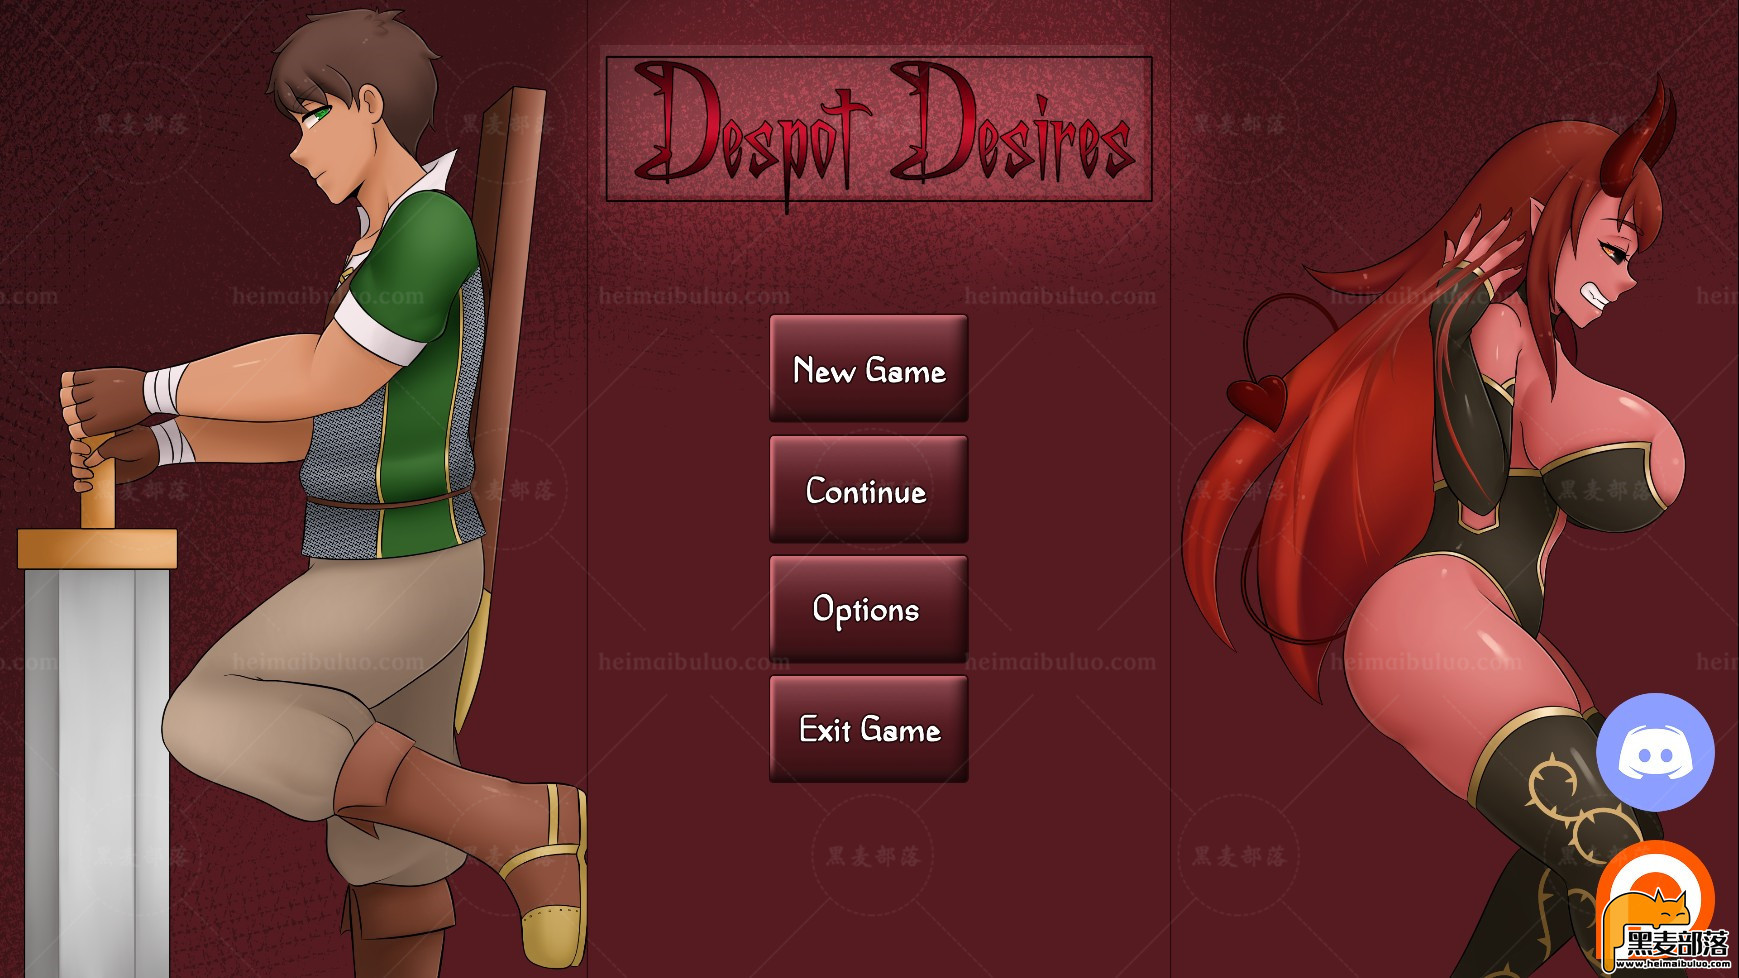 魔王与英雄(Despot Desires) Ver1.6中文版 电脑版+安卓 沙盒游戏